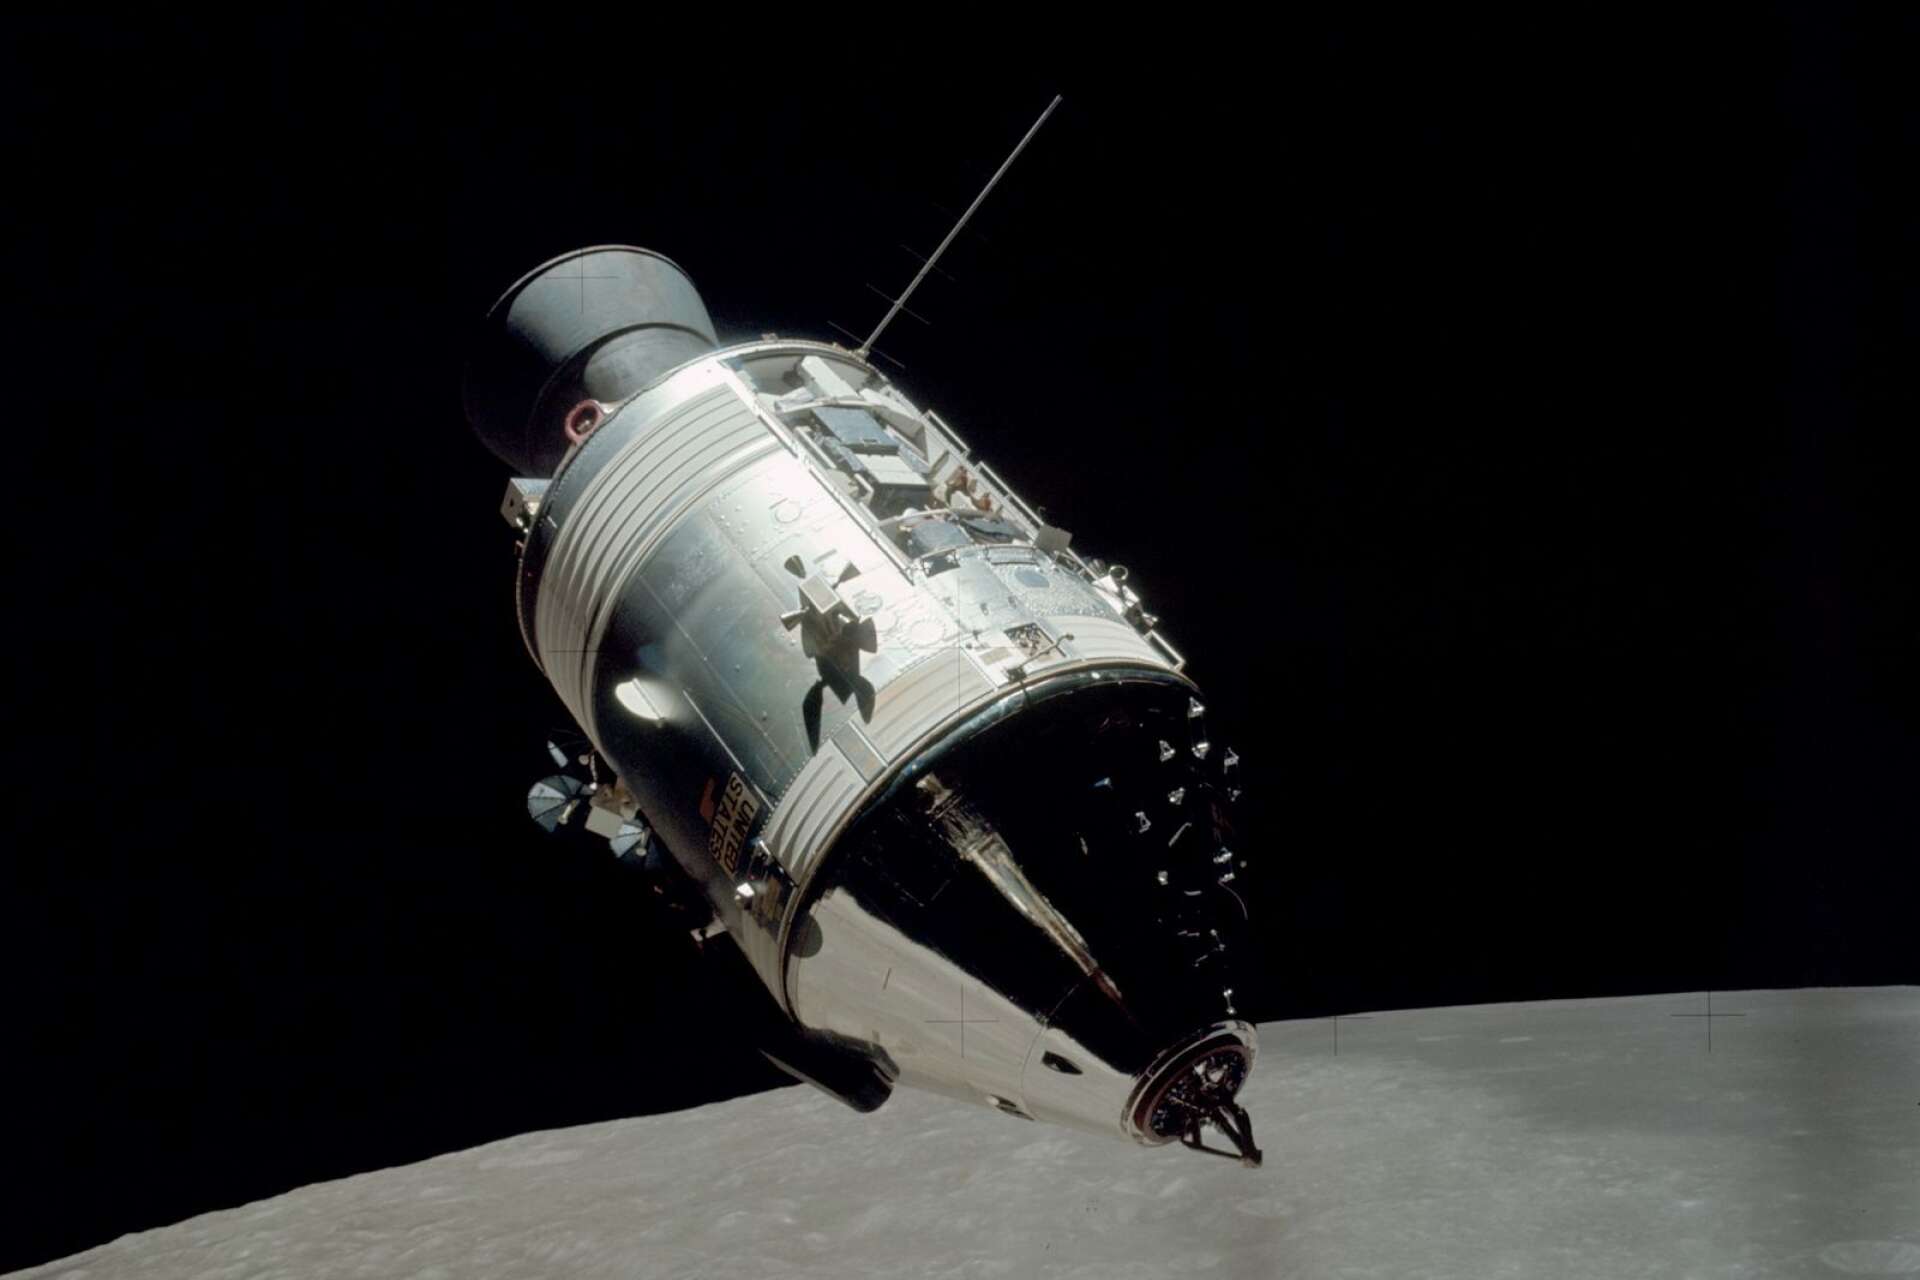 Kommando- och servicemodulen America sedd från månlandaren Challenger i omloppsbana runt månen.